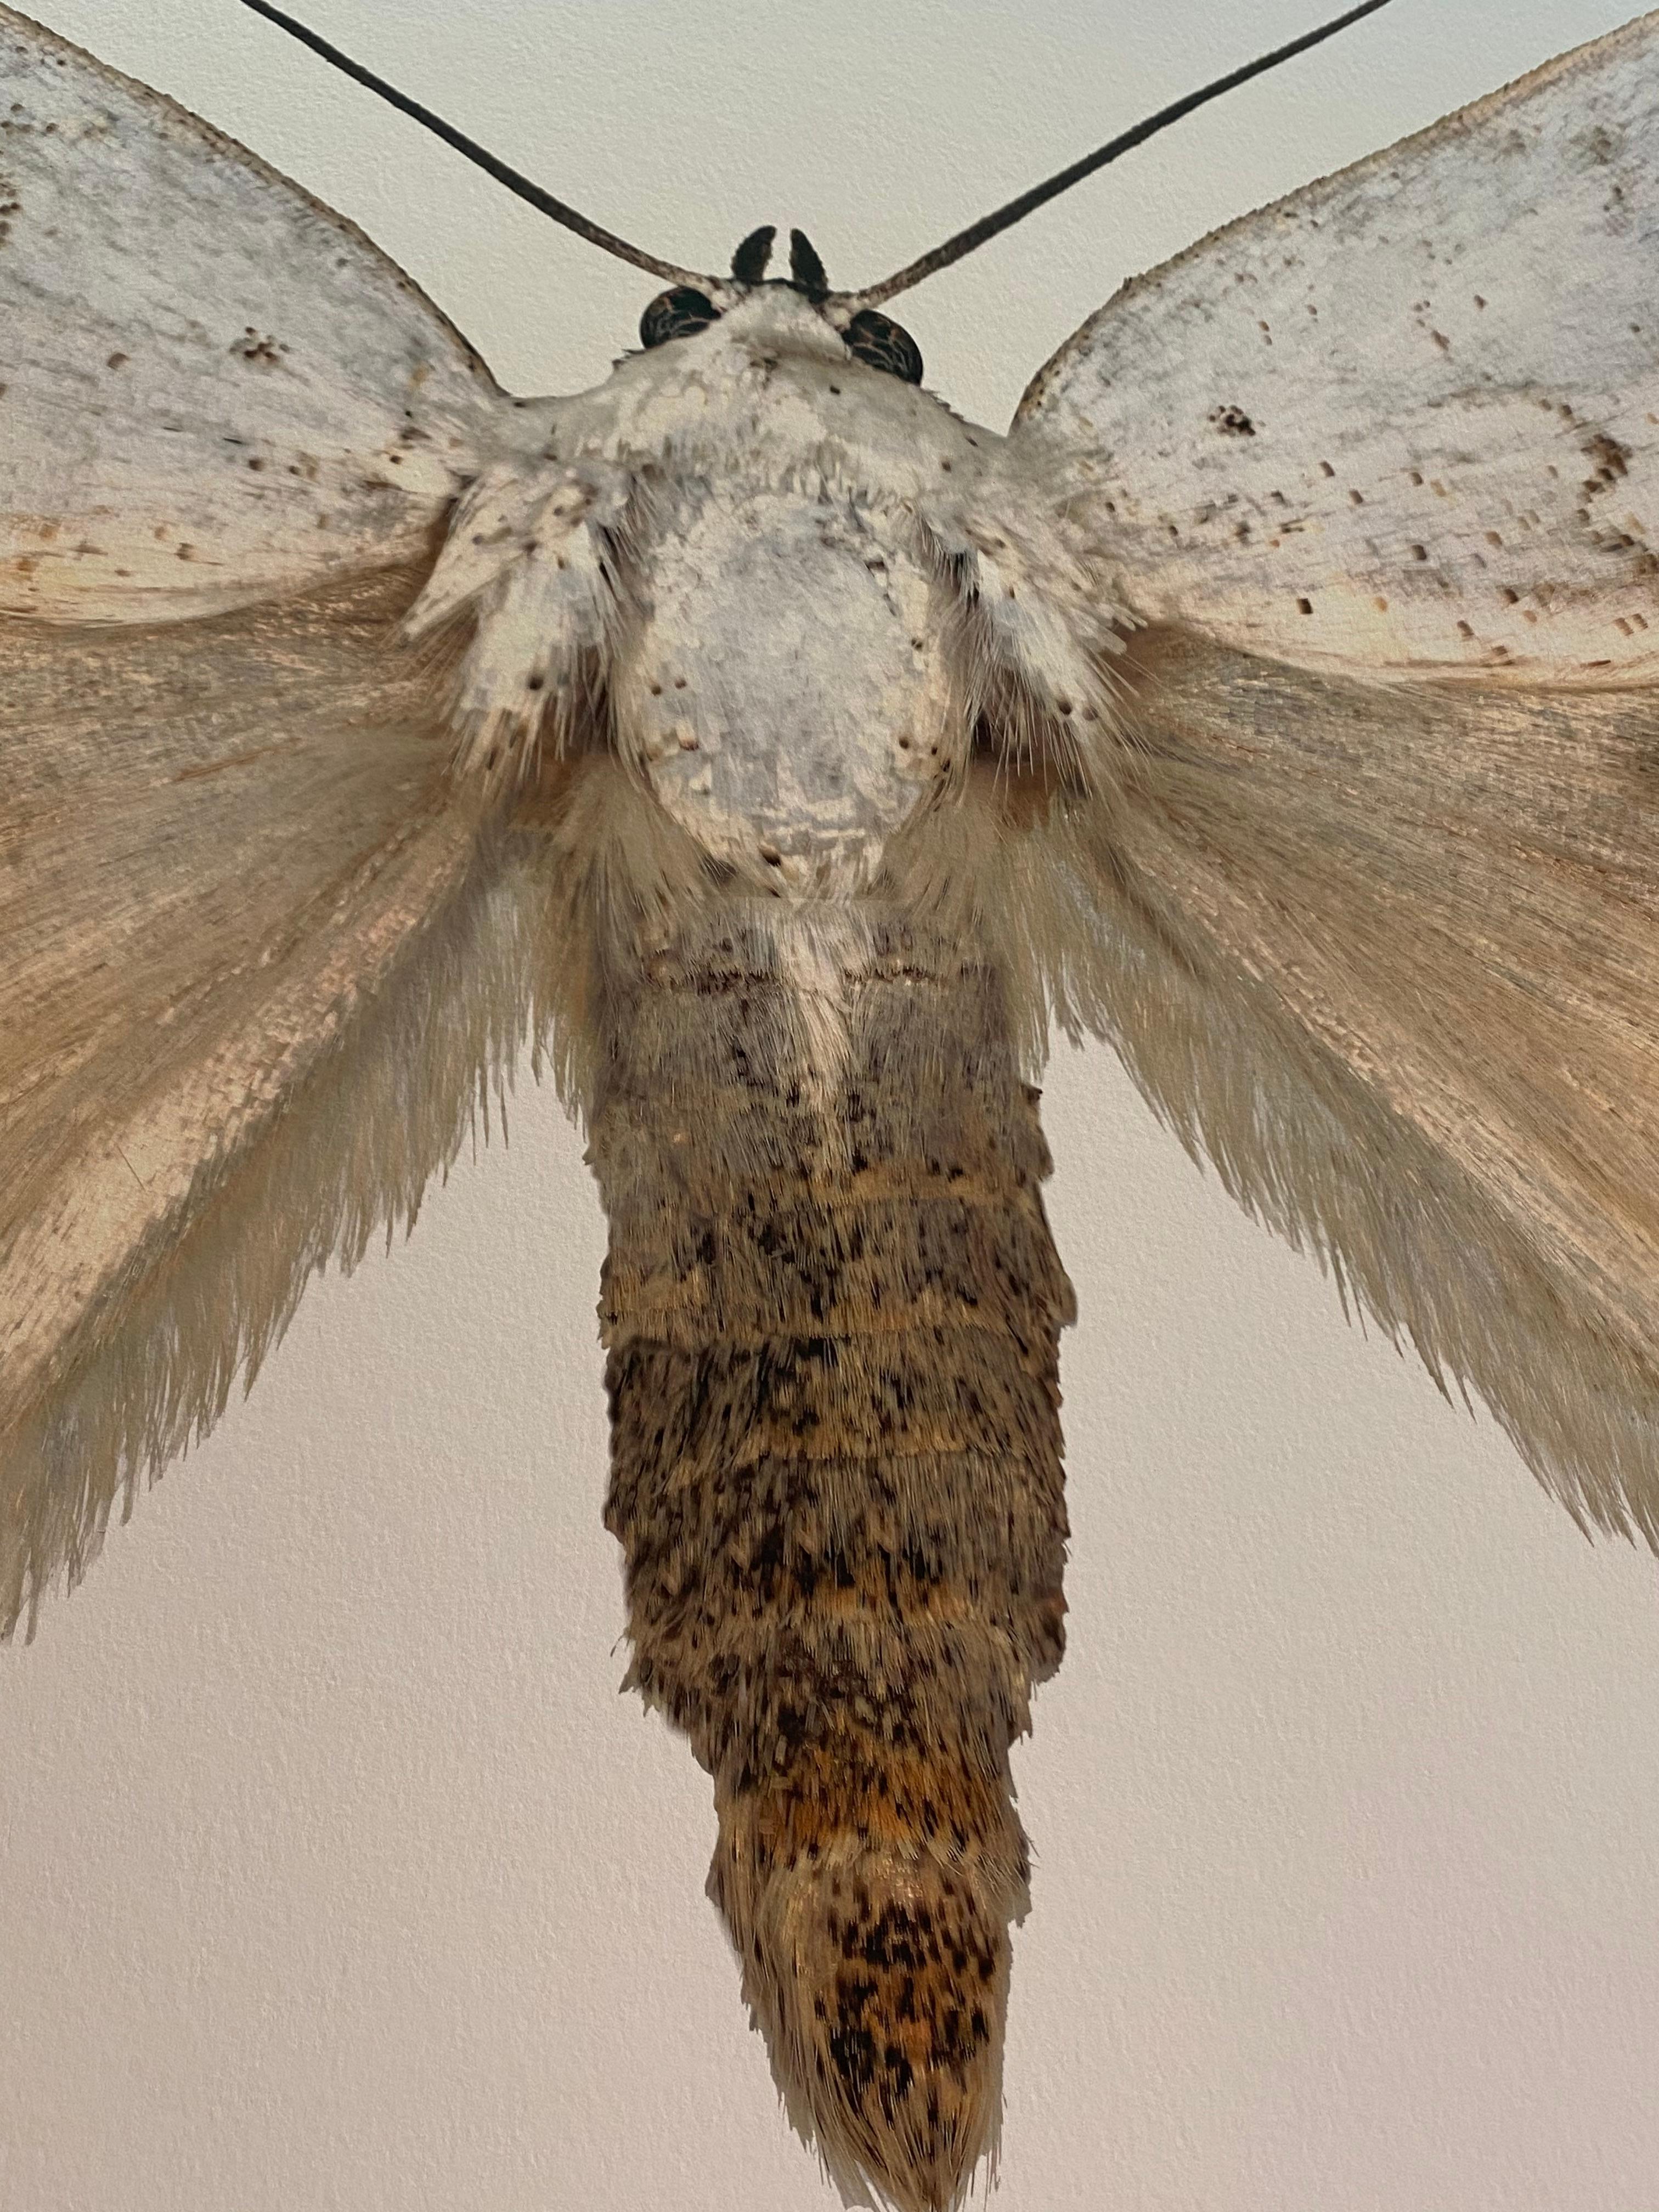 Dans cette impression pigmentaire d'archives hyper-détaillée sur papier aquarelle, un papillon de nuit blanc avec des marques circulaires brunes sur ses ailes se détache de façon spectaculaire sur un fond blanc uni. 

Le prix indiqué est le prix